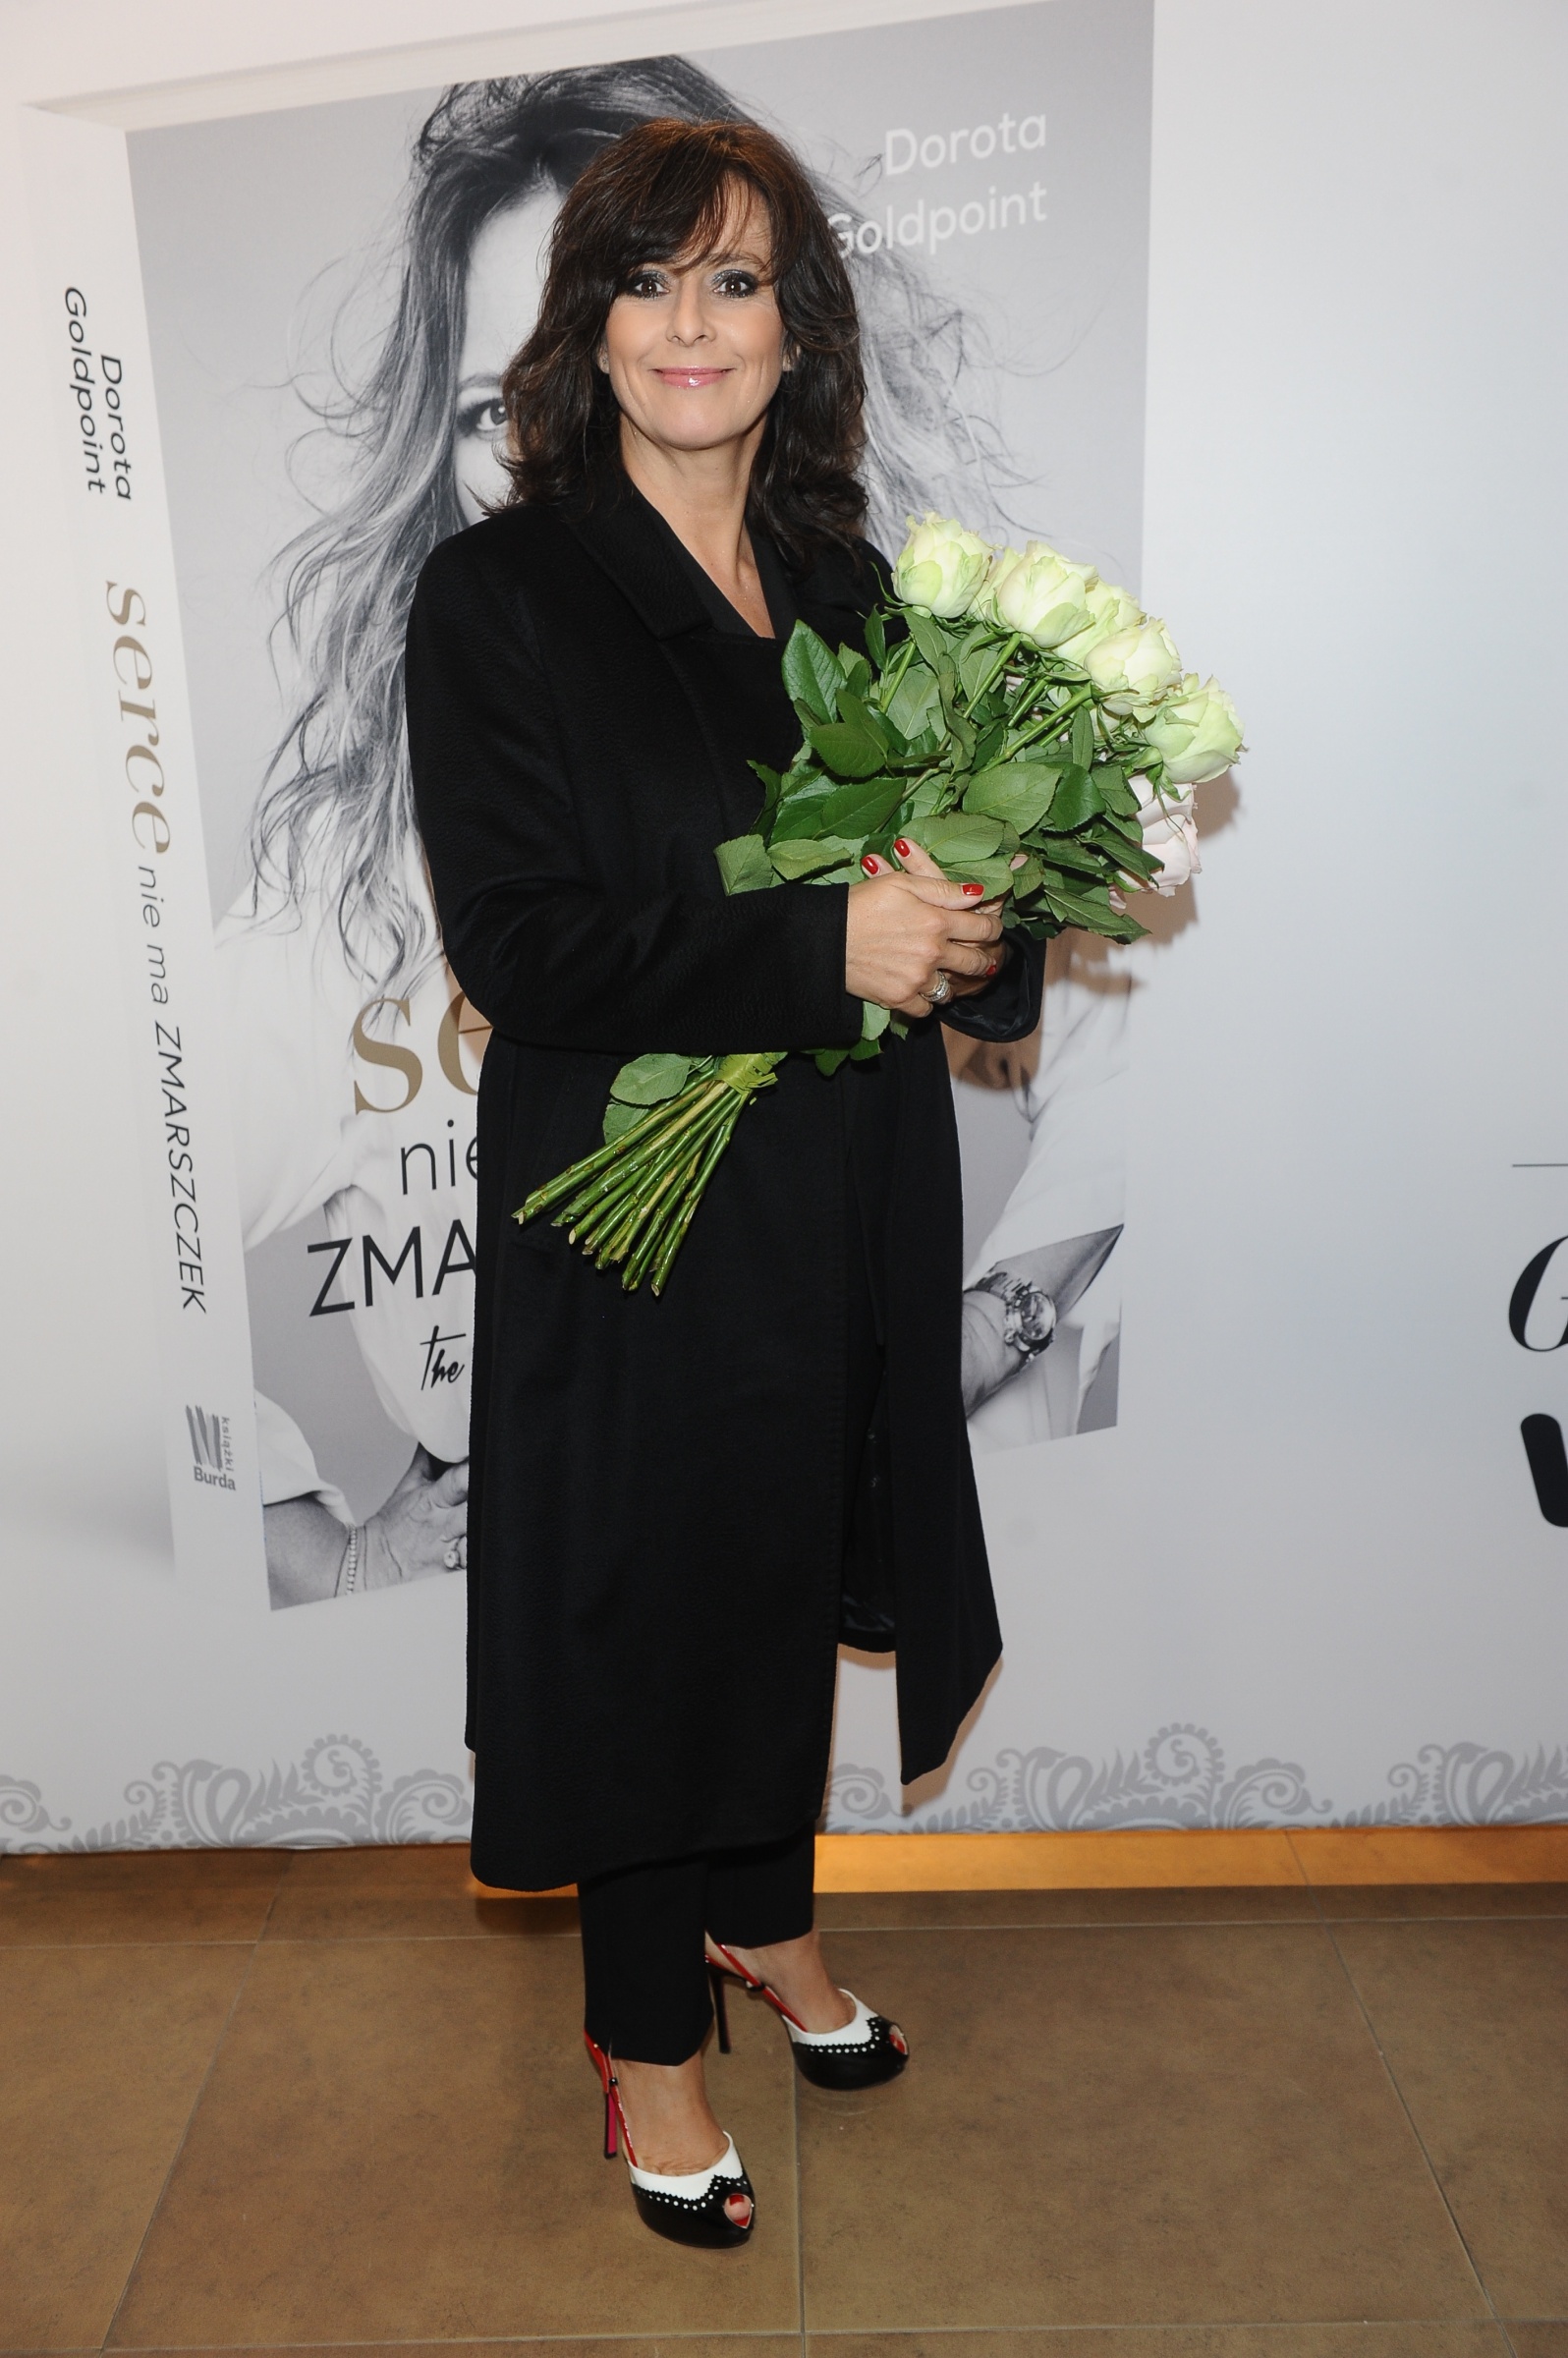 Anna Korcz na premierze książki Doroty Goldpoint